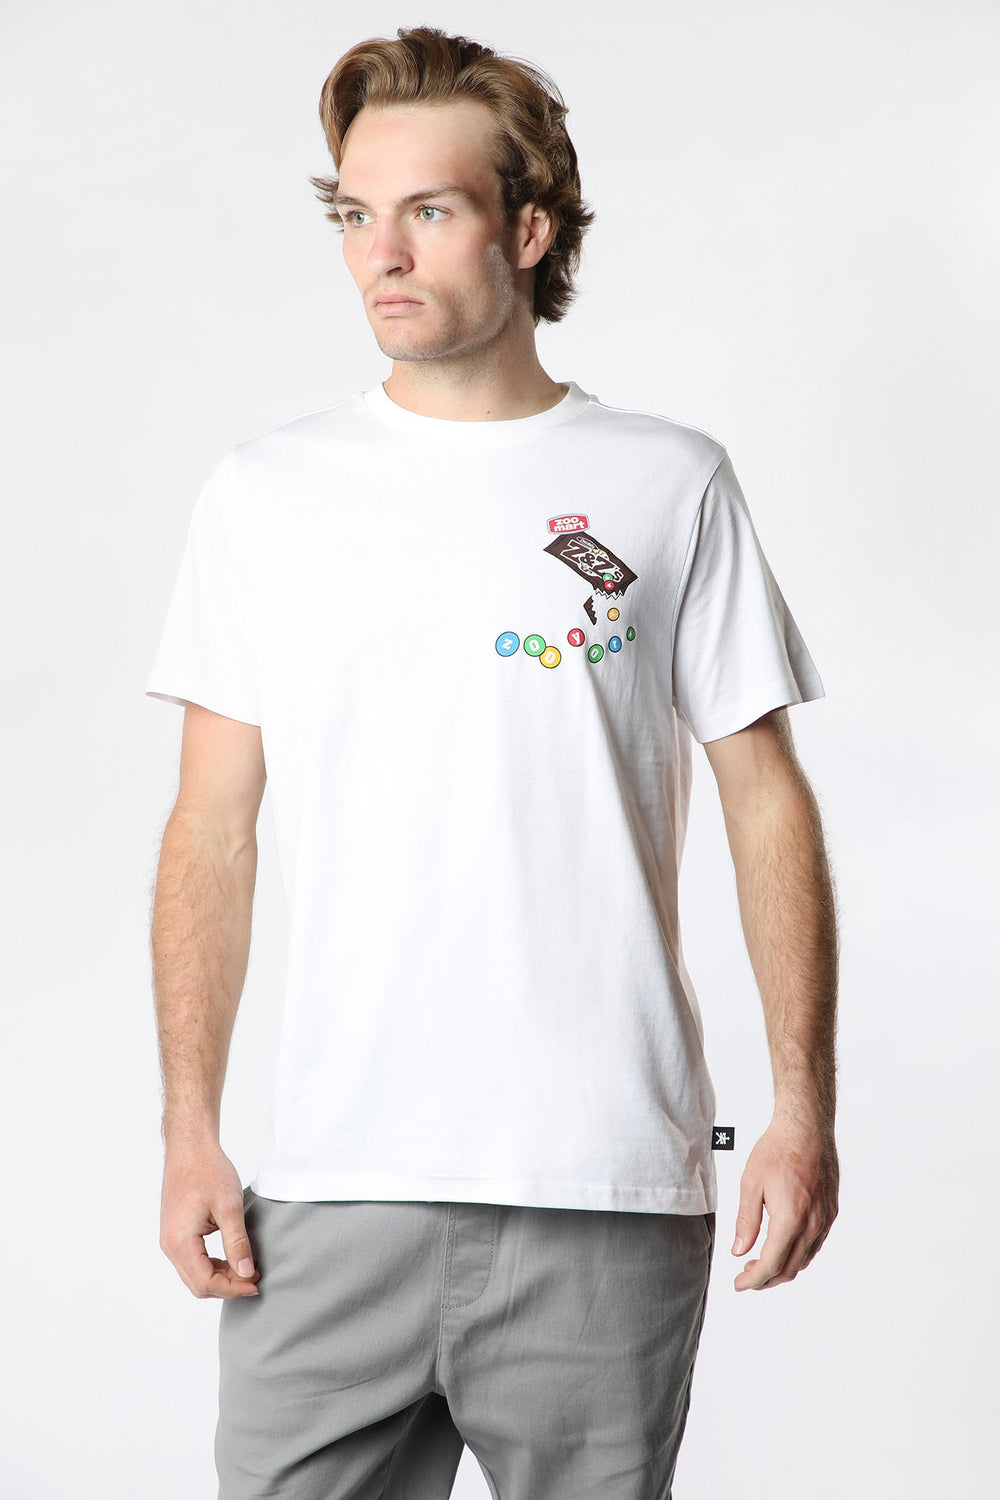 Zoo York Mens Zoomart Graphic T-Shirt White